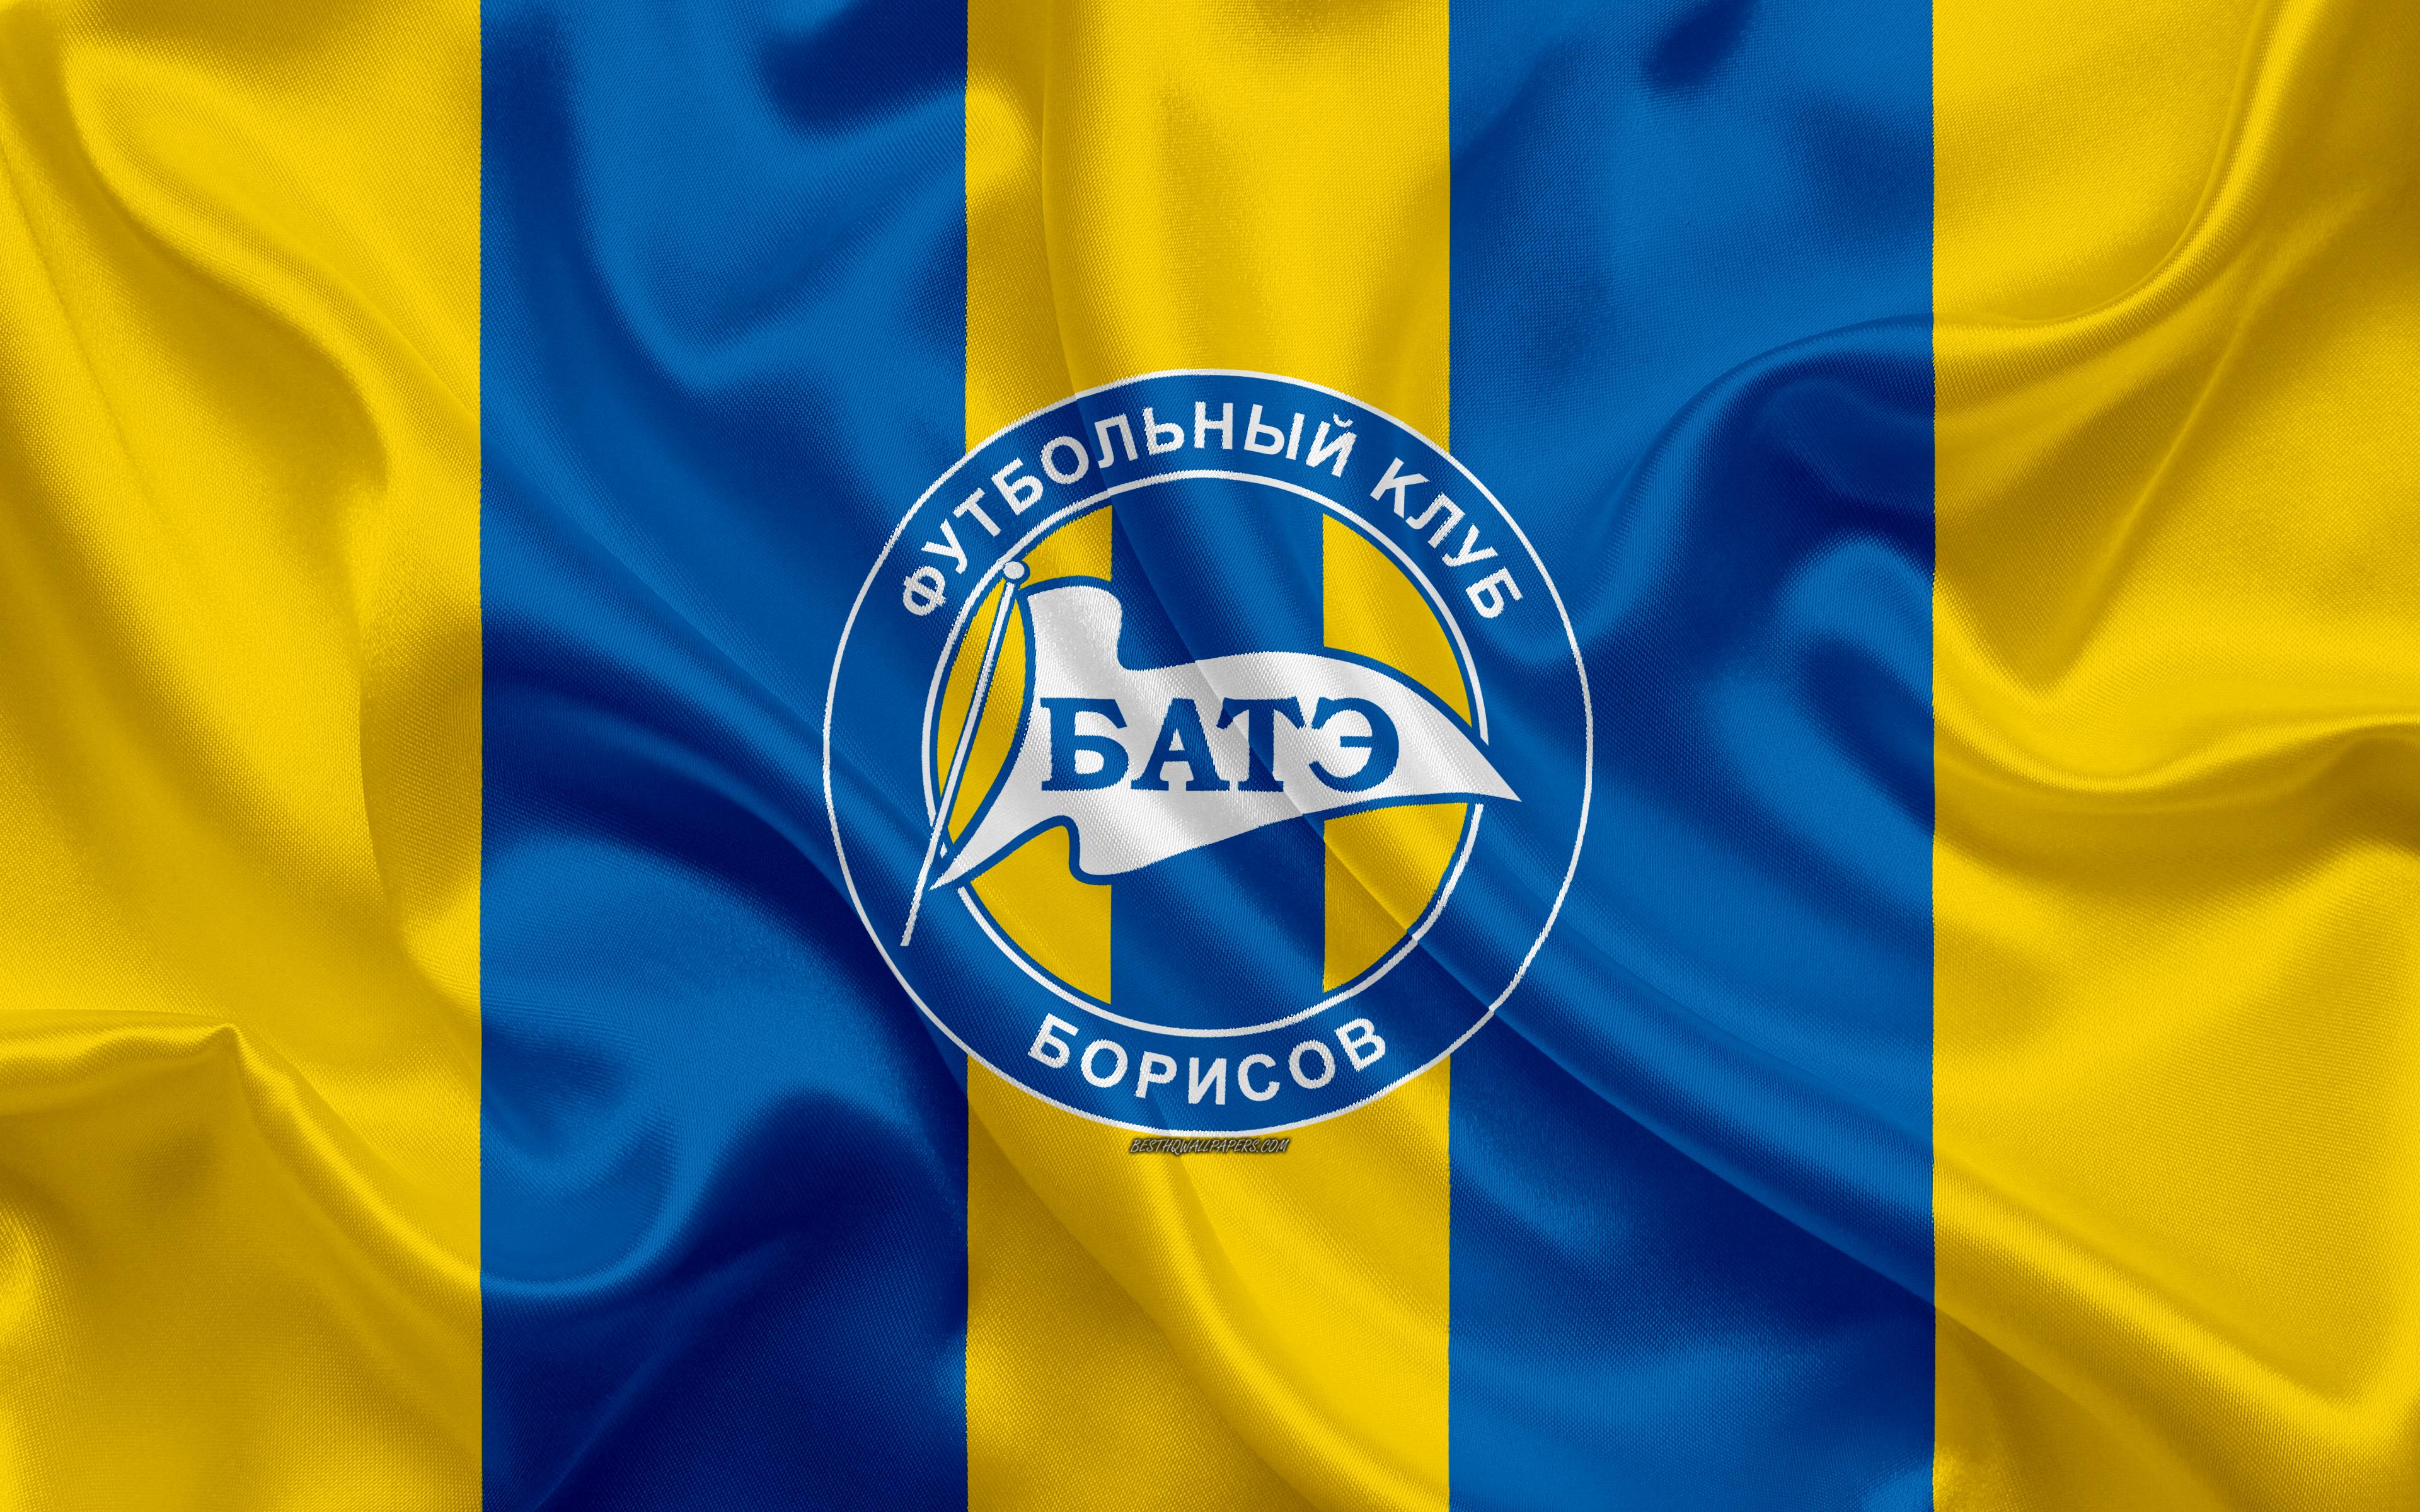 Borisov bate FC BATE